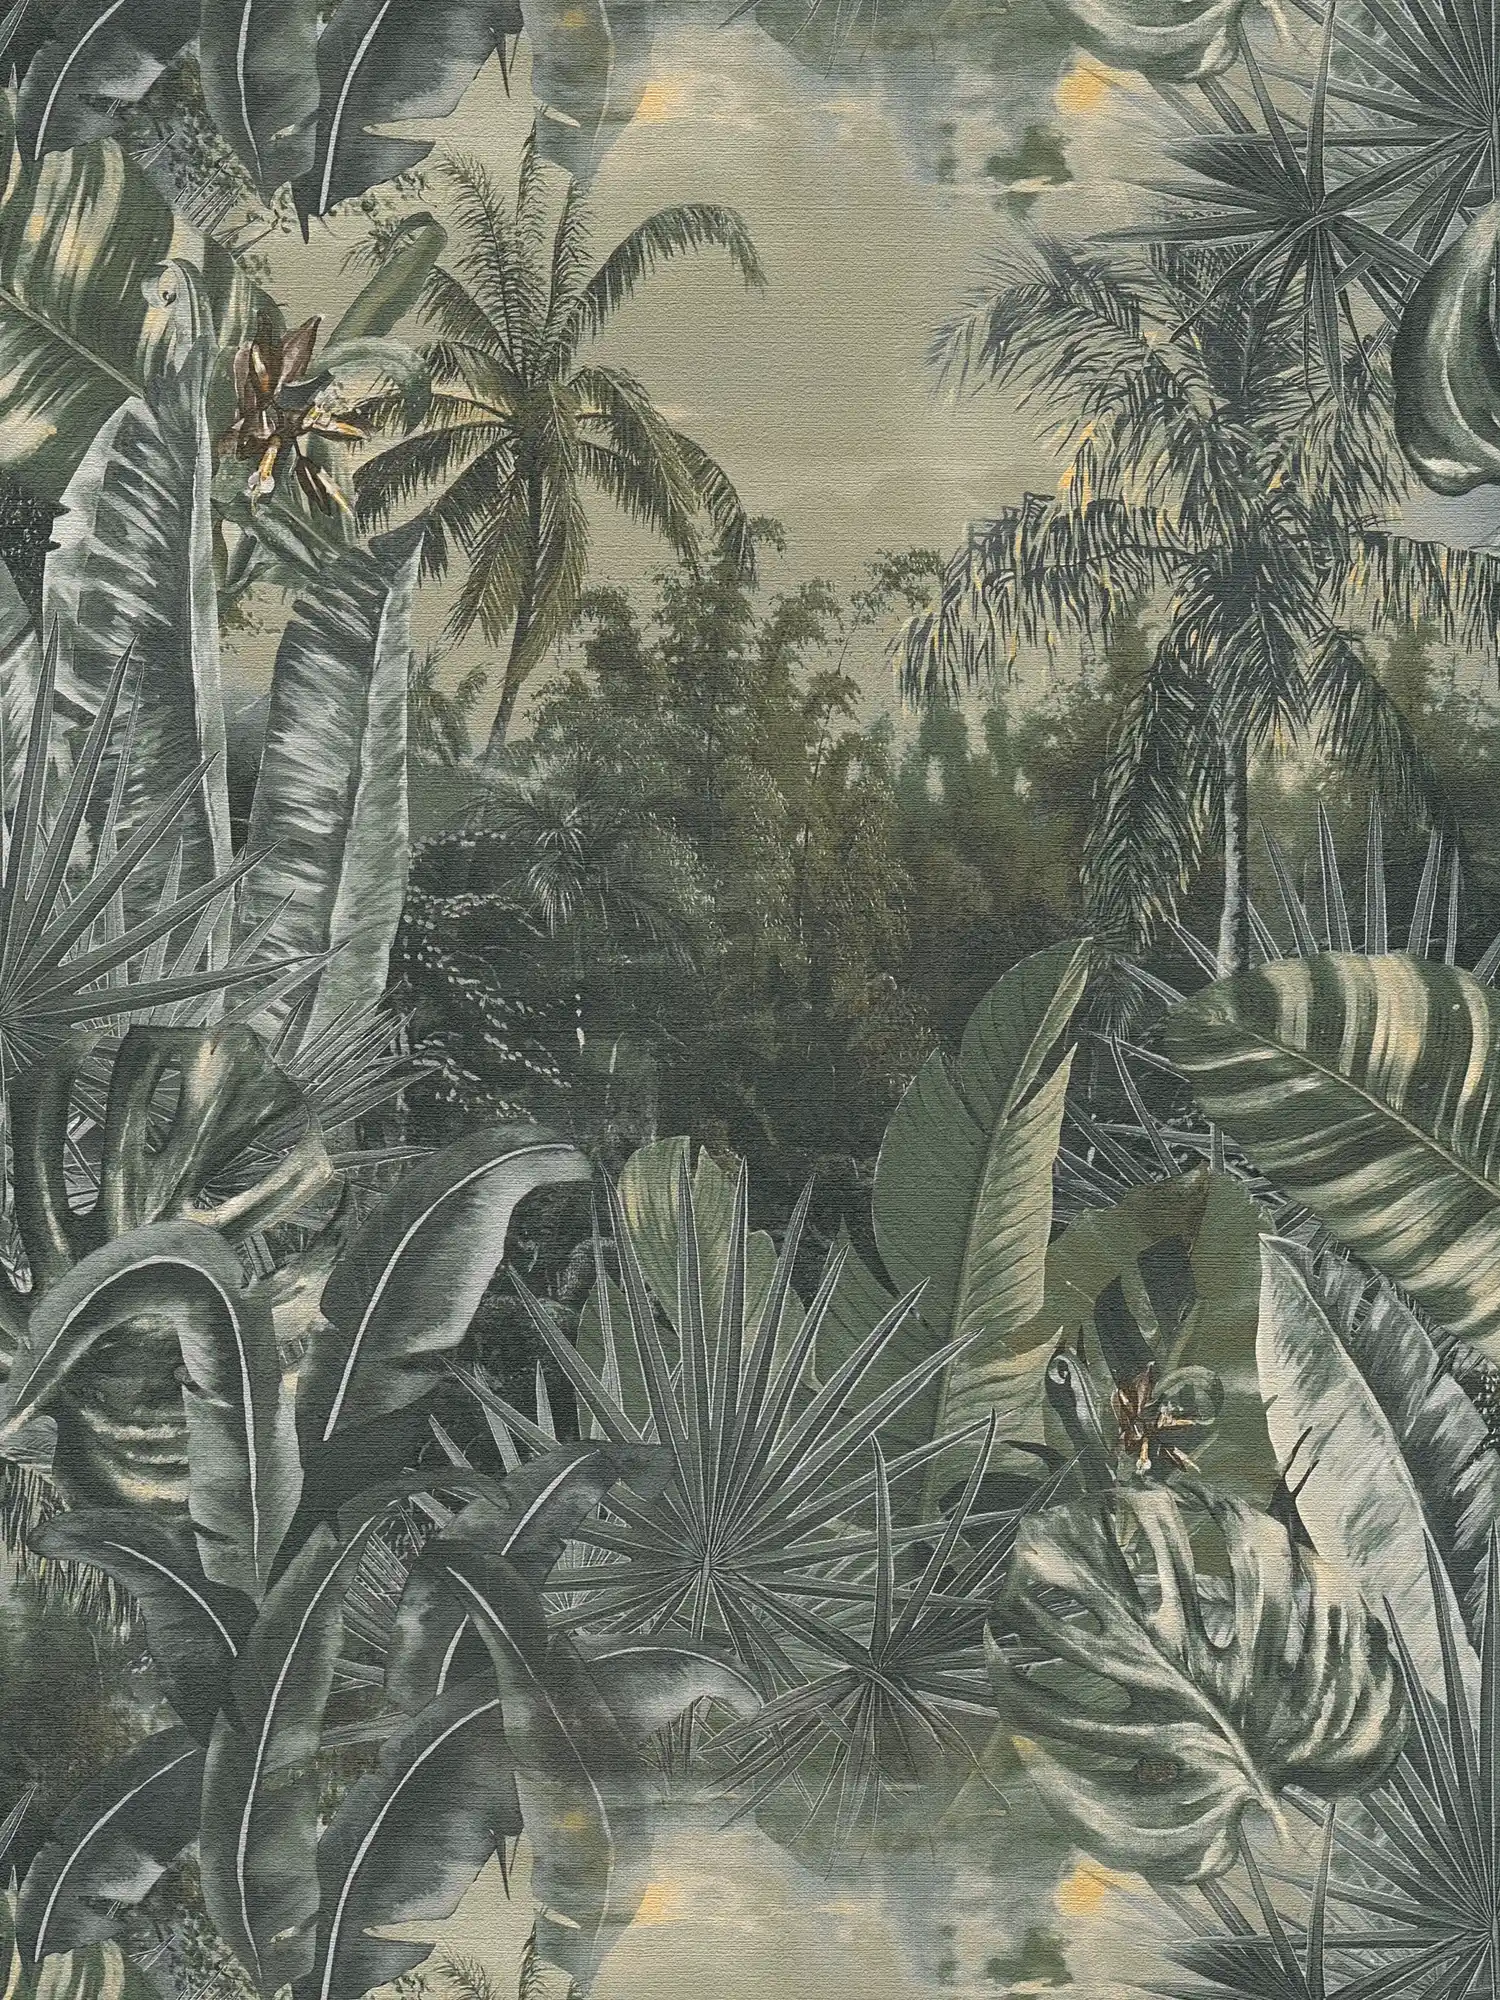 Palm behang jungle patroon, moderne koloniale stijl - groen
